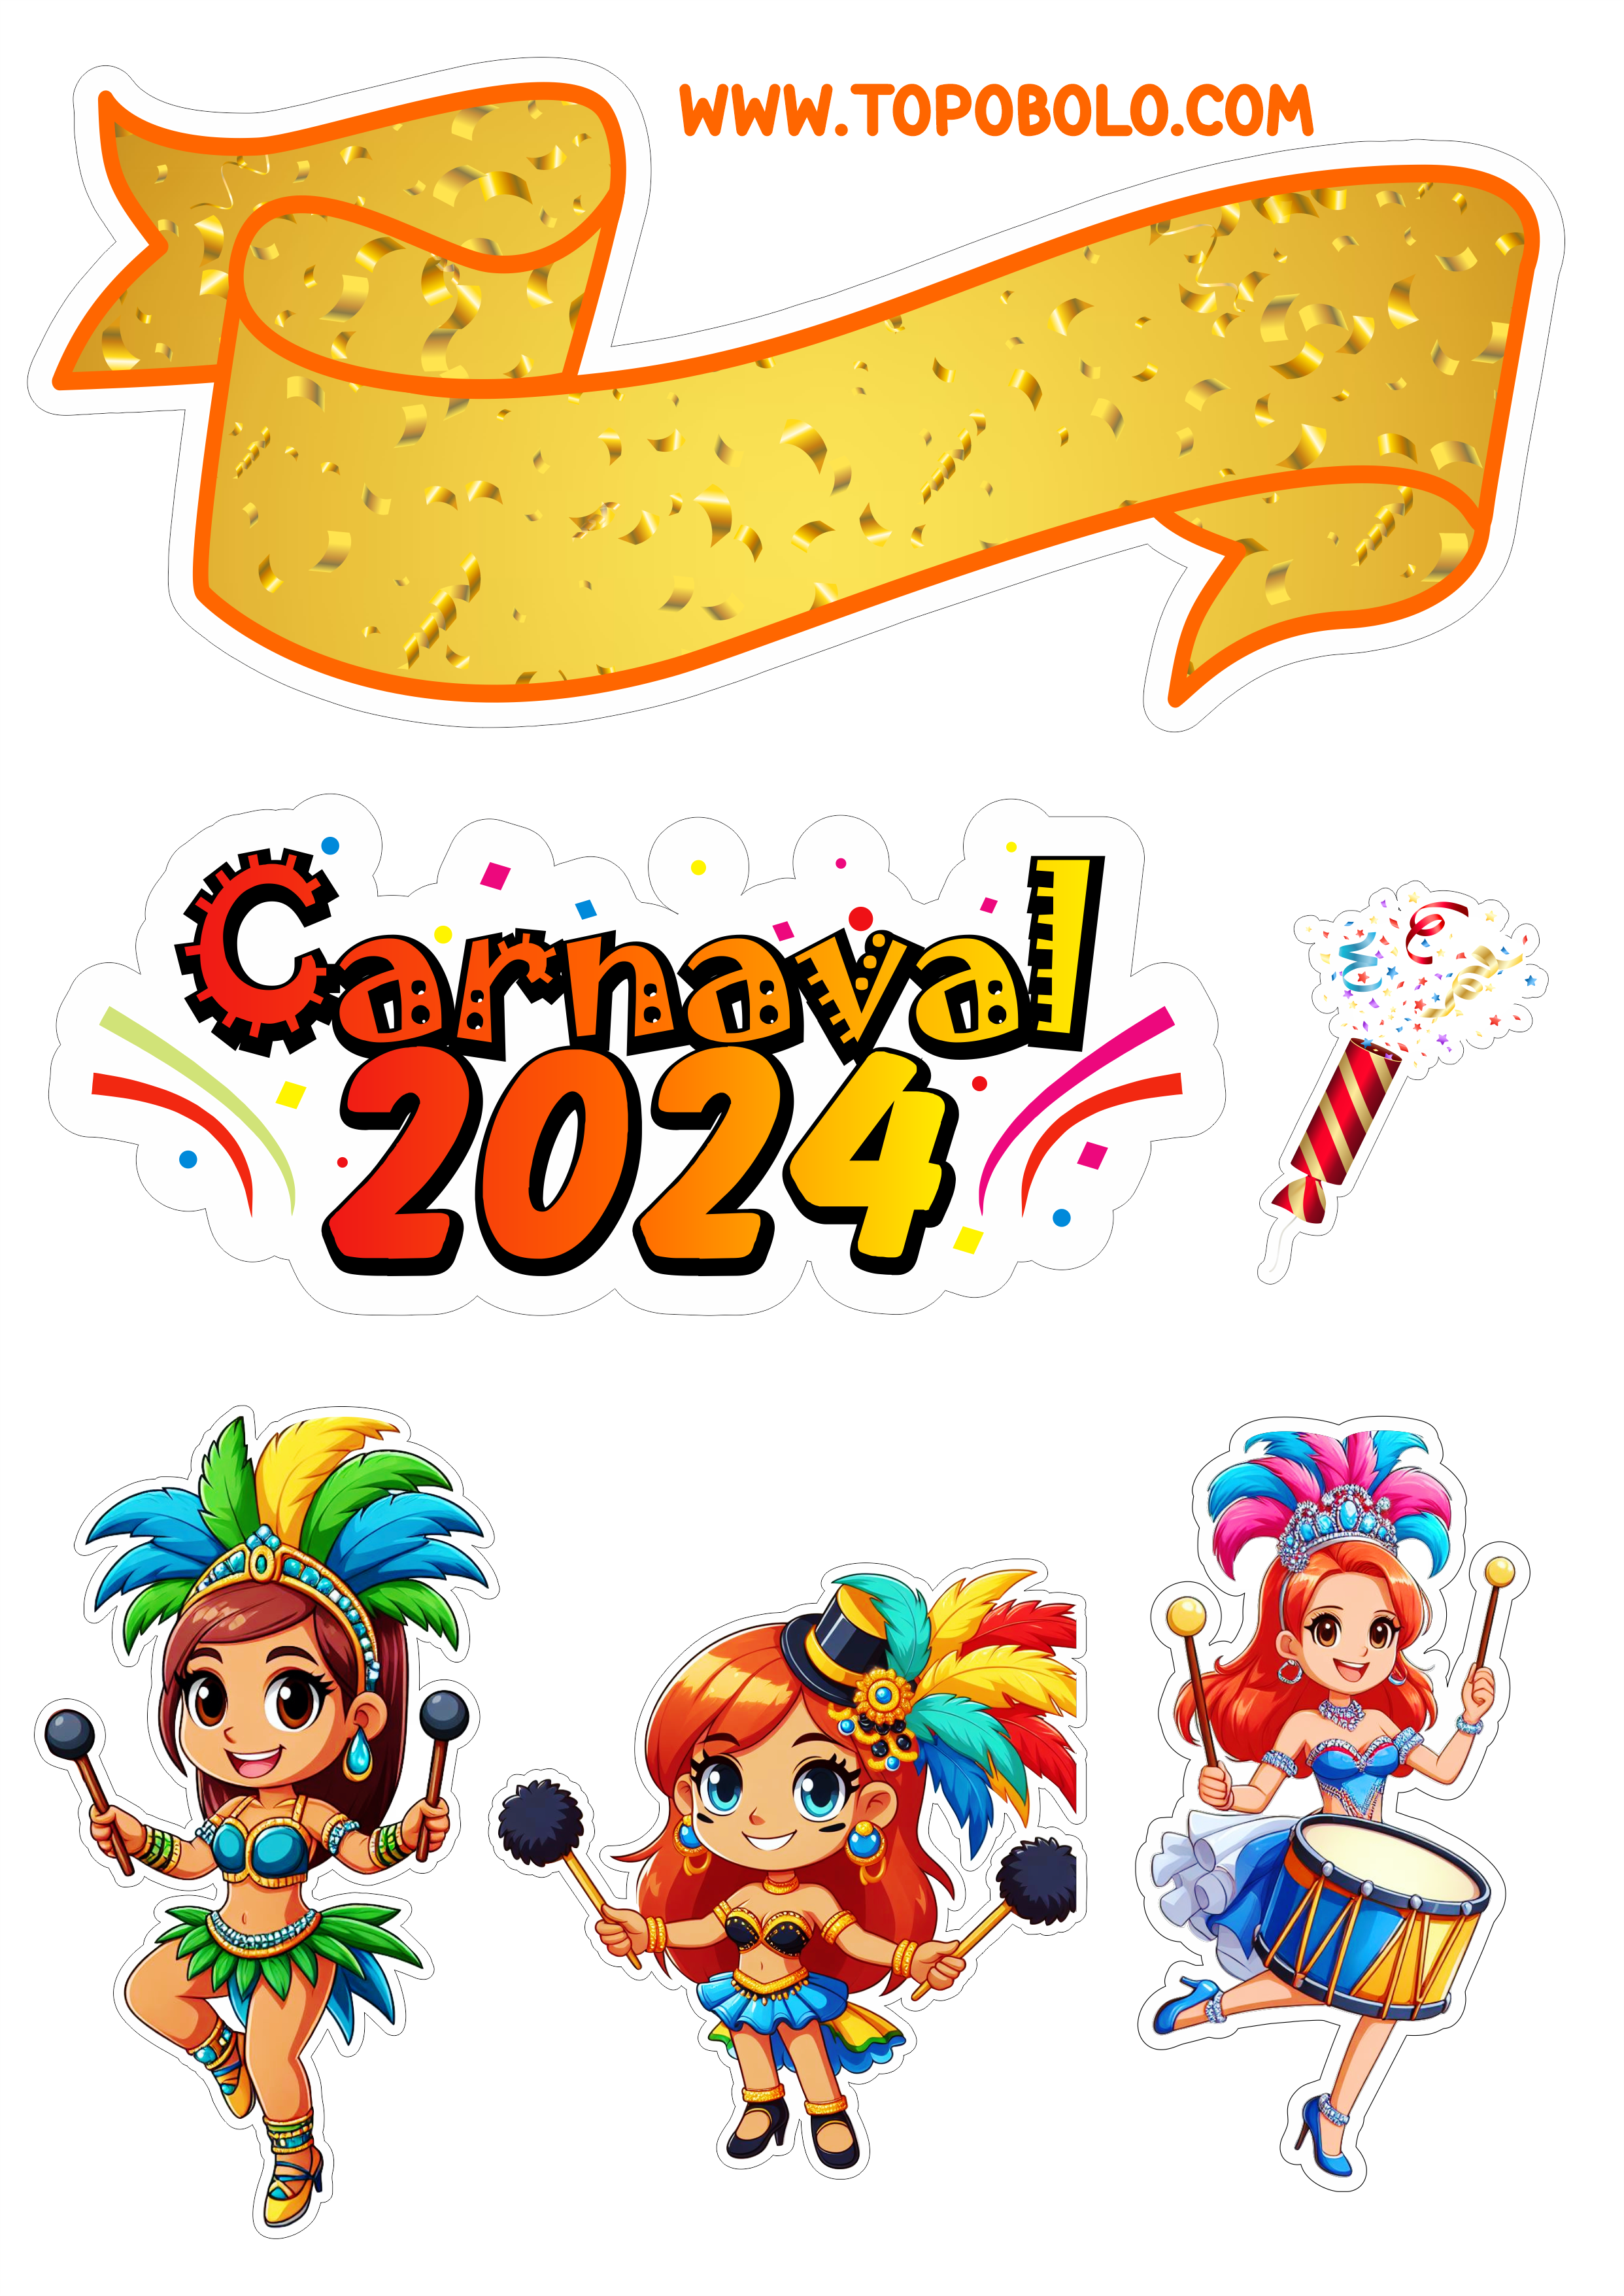 Topo de bolo carnaval 2024 decoração de aniversário baile de máscaras confete artes gráficas escola de samba design png